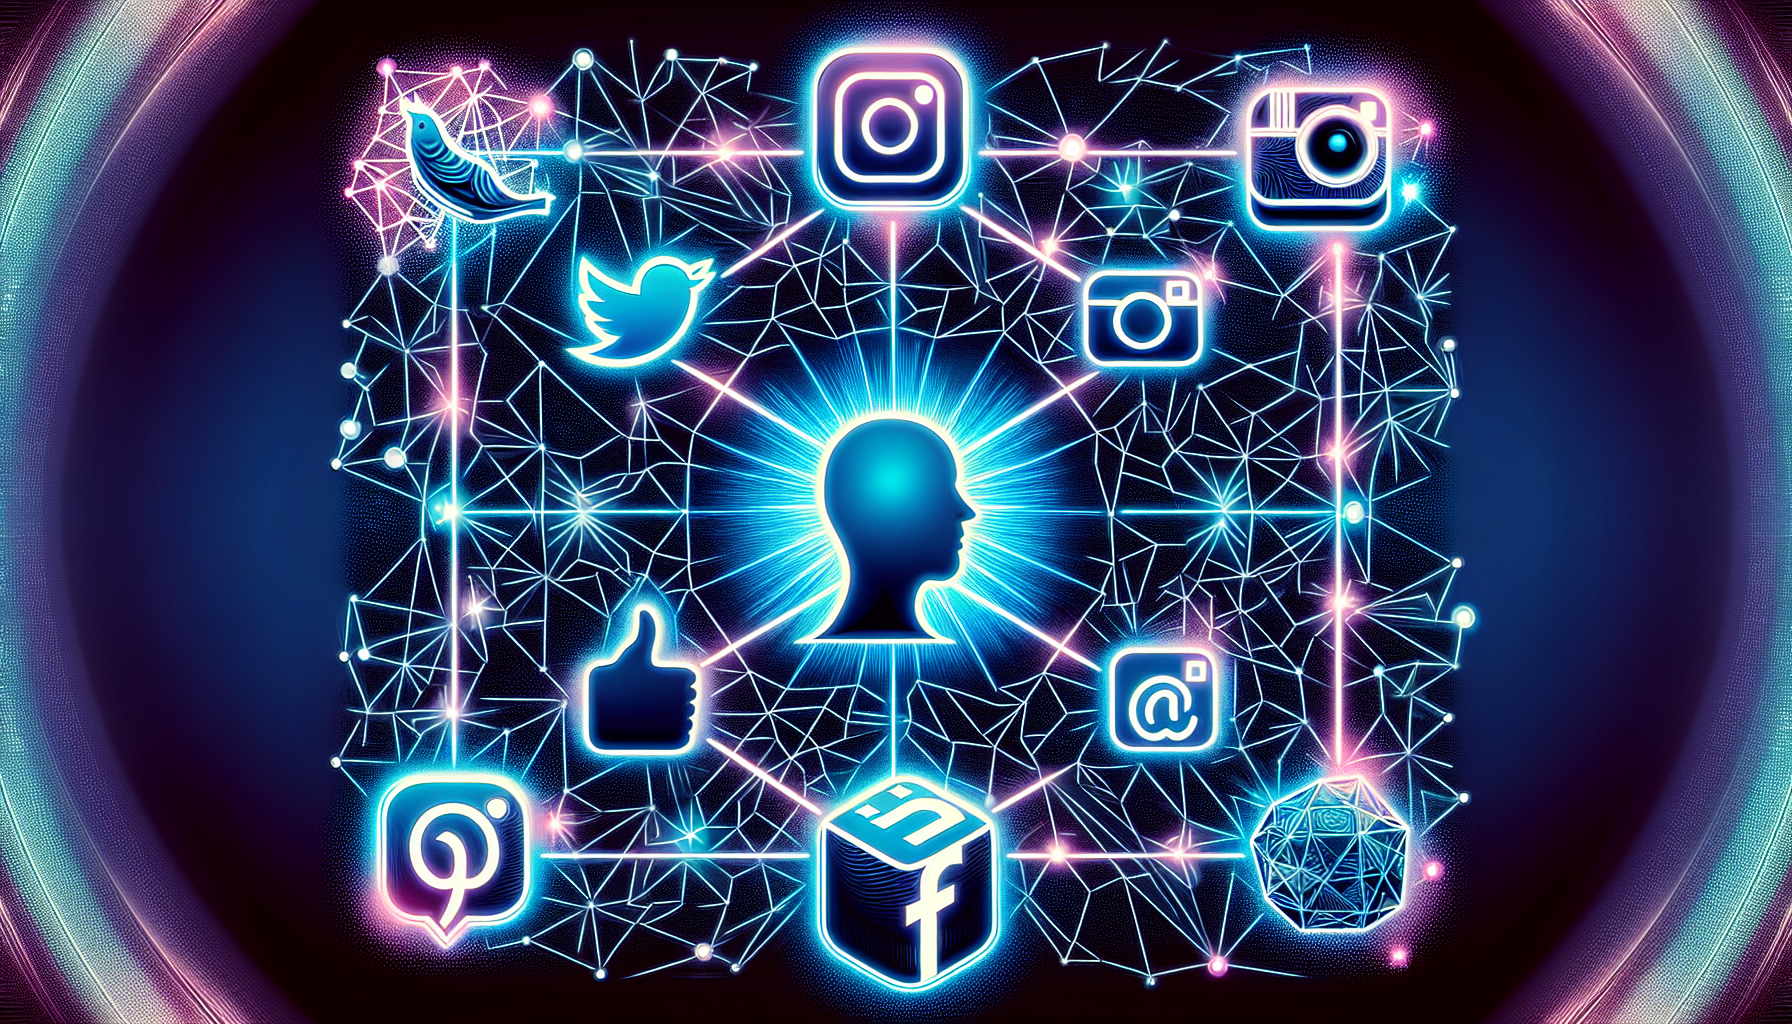 Illustration of various social media platforms